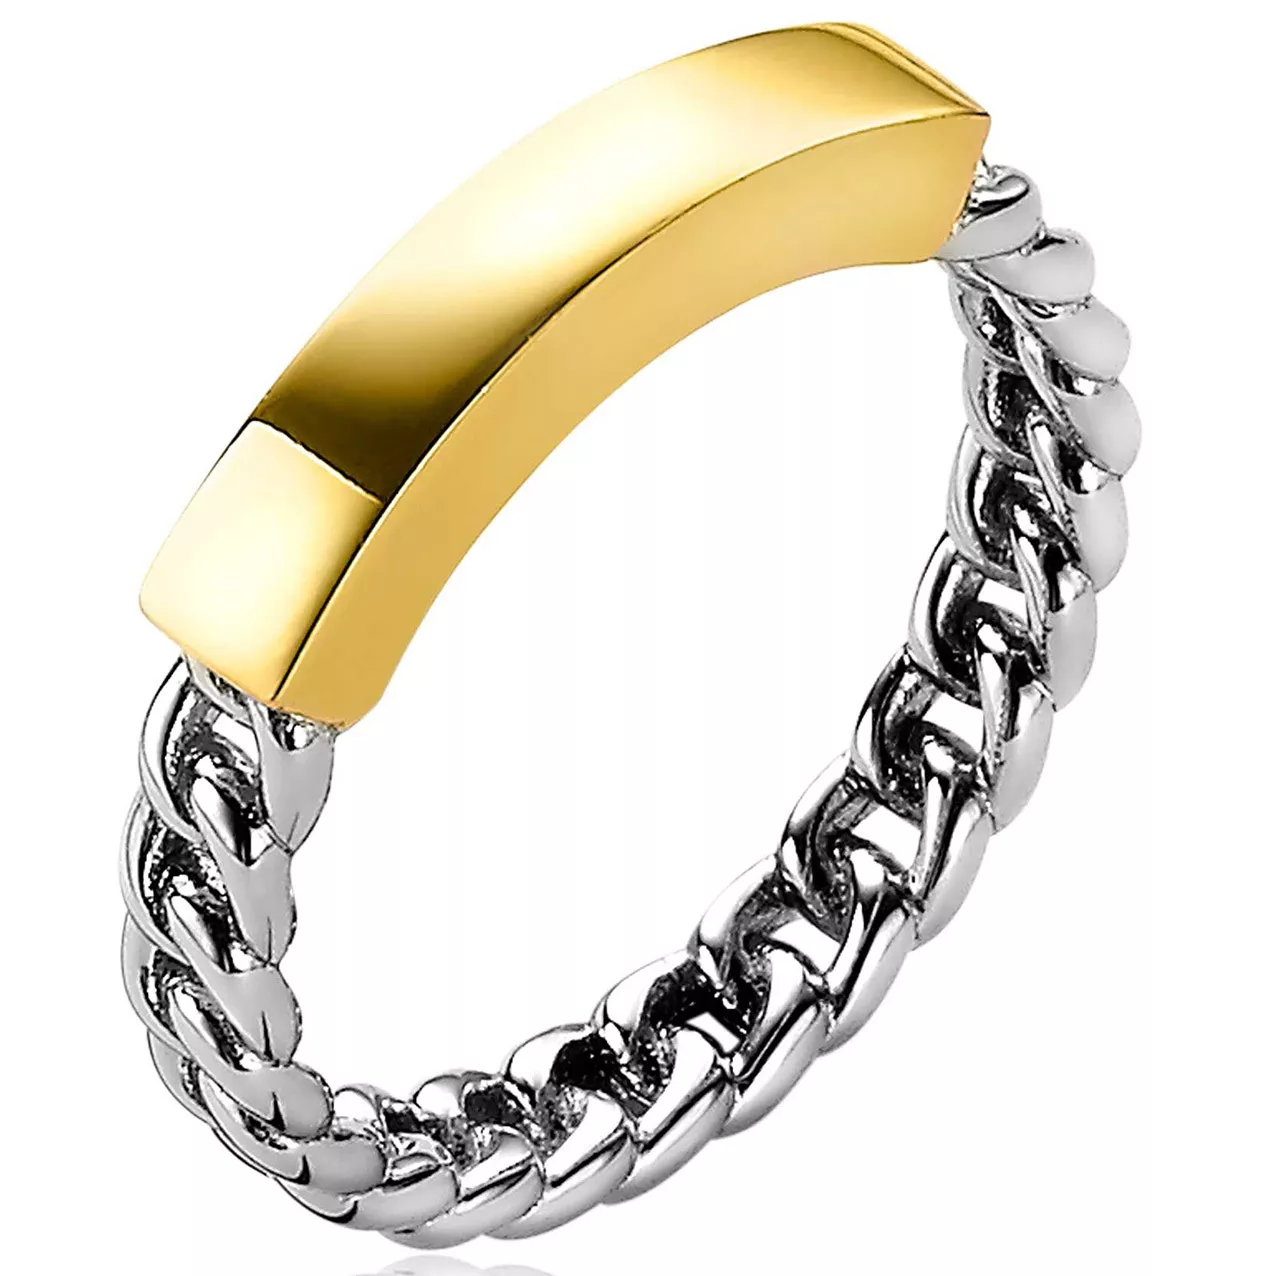 Zinzi ZIR2198 Ring Staaf-Gourmet zilver goudkleurig